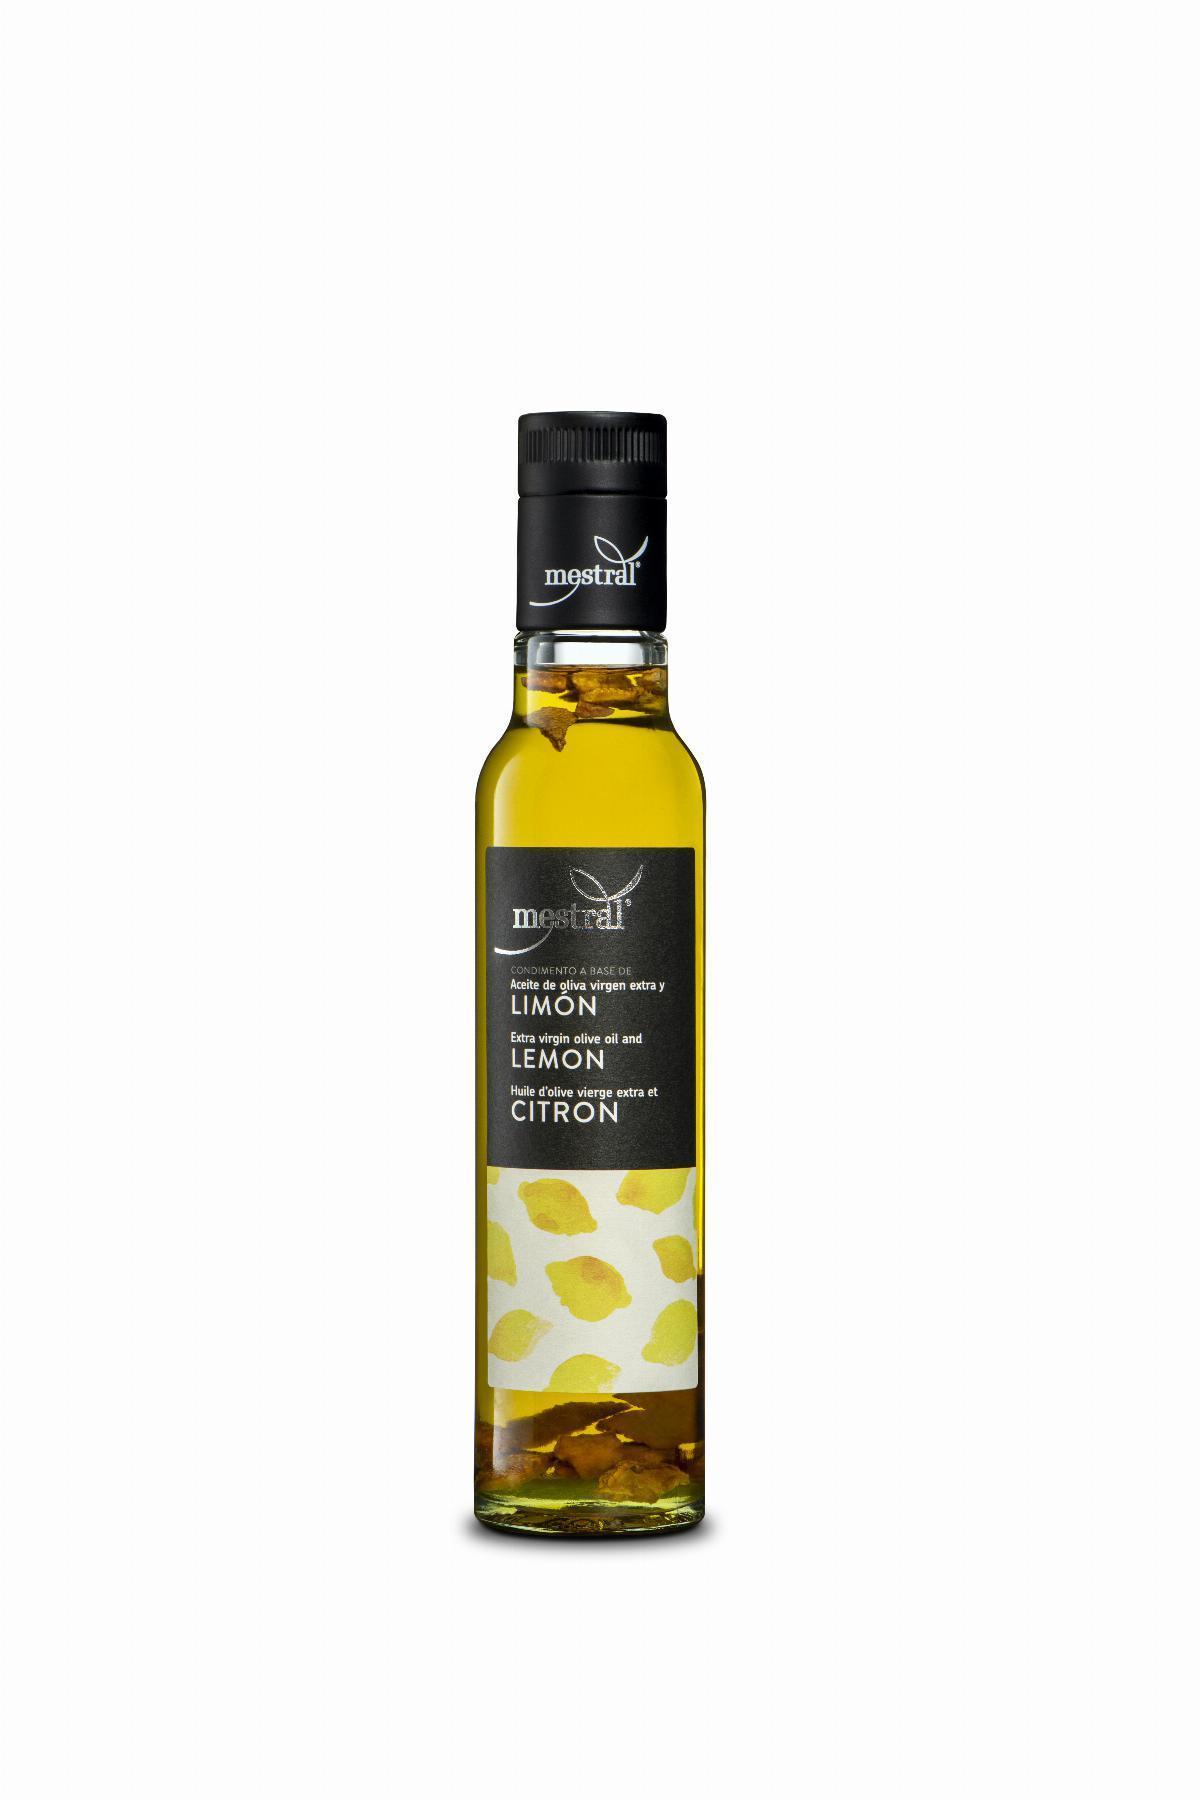 Aceites y Condimentos - Condimento preparado a base de aceite de oliva y lioón Mestral botella 250 ml - Mestral Cambrils